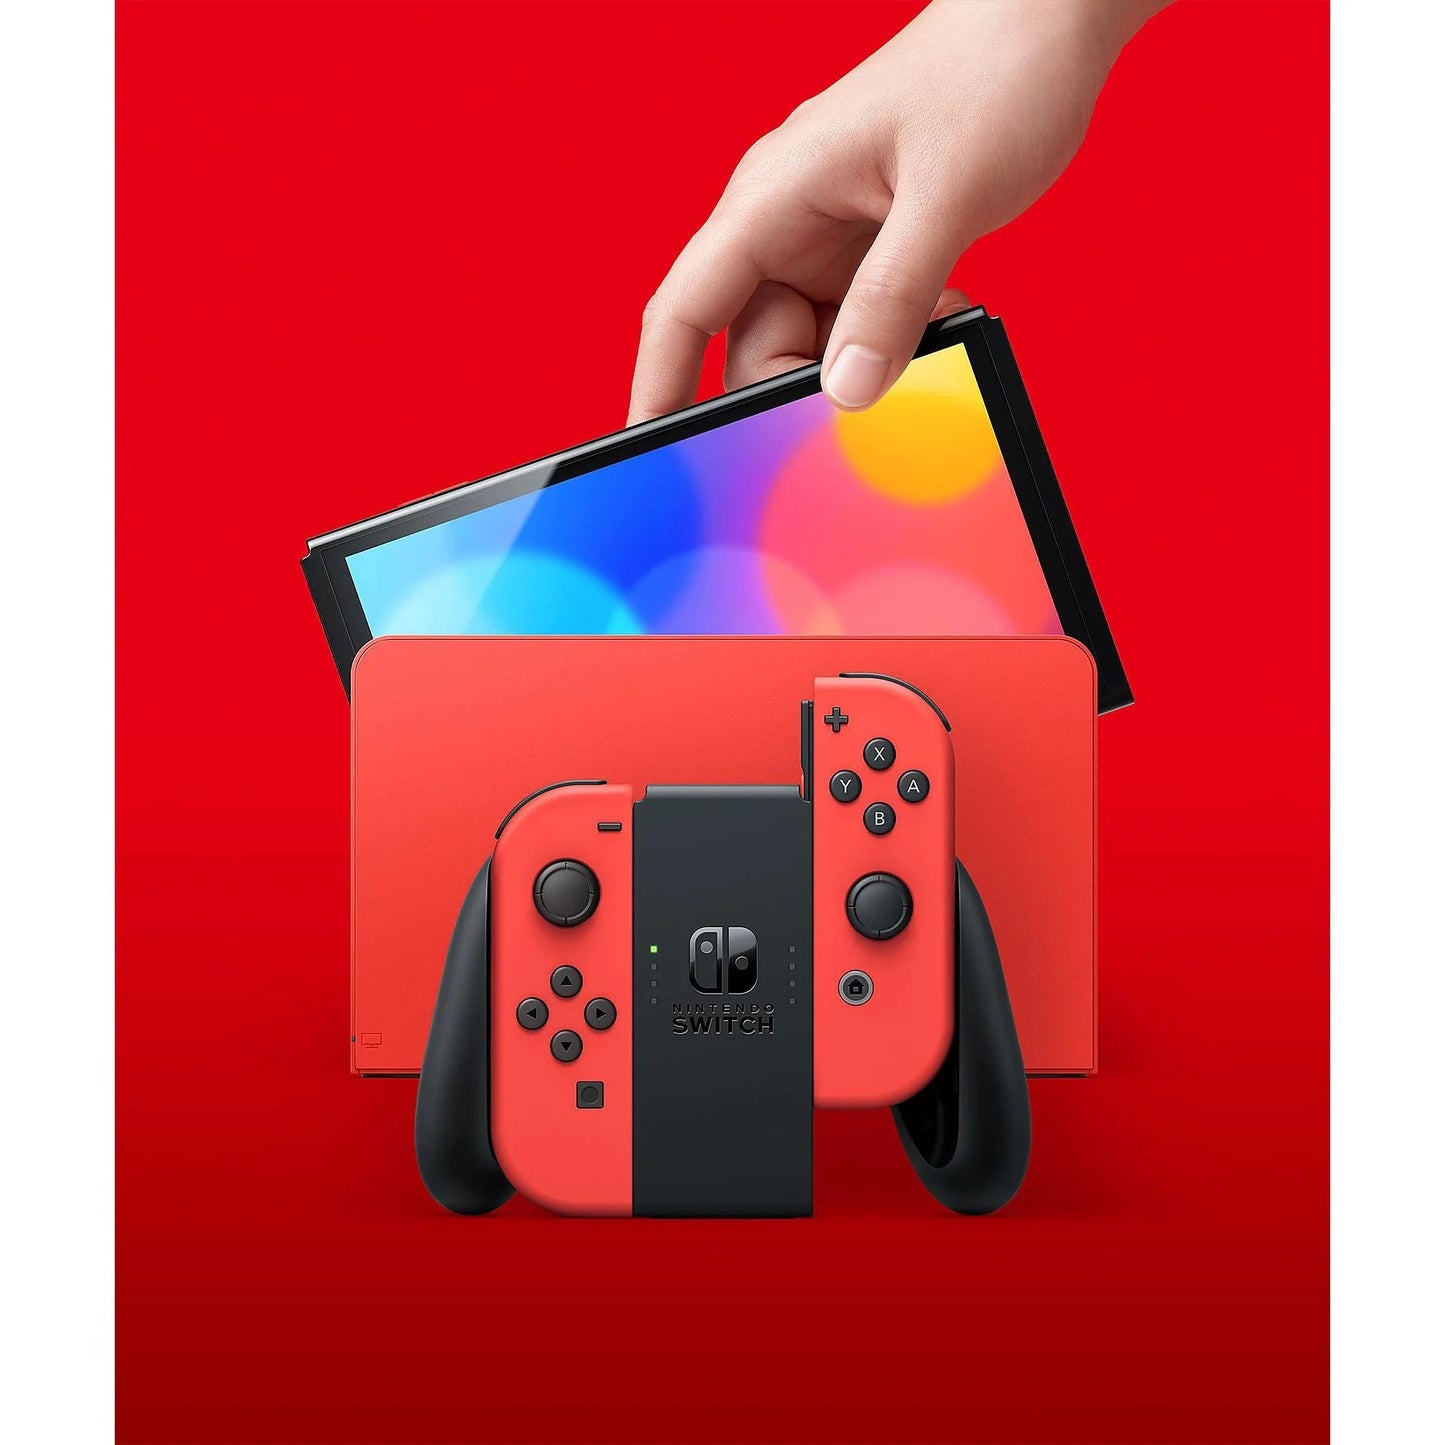 Nintendo Switch OLED Super Mario Red Edition | Lieferung vor Weihnachten - Instock Germany